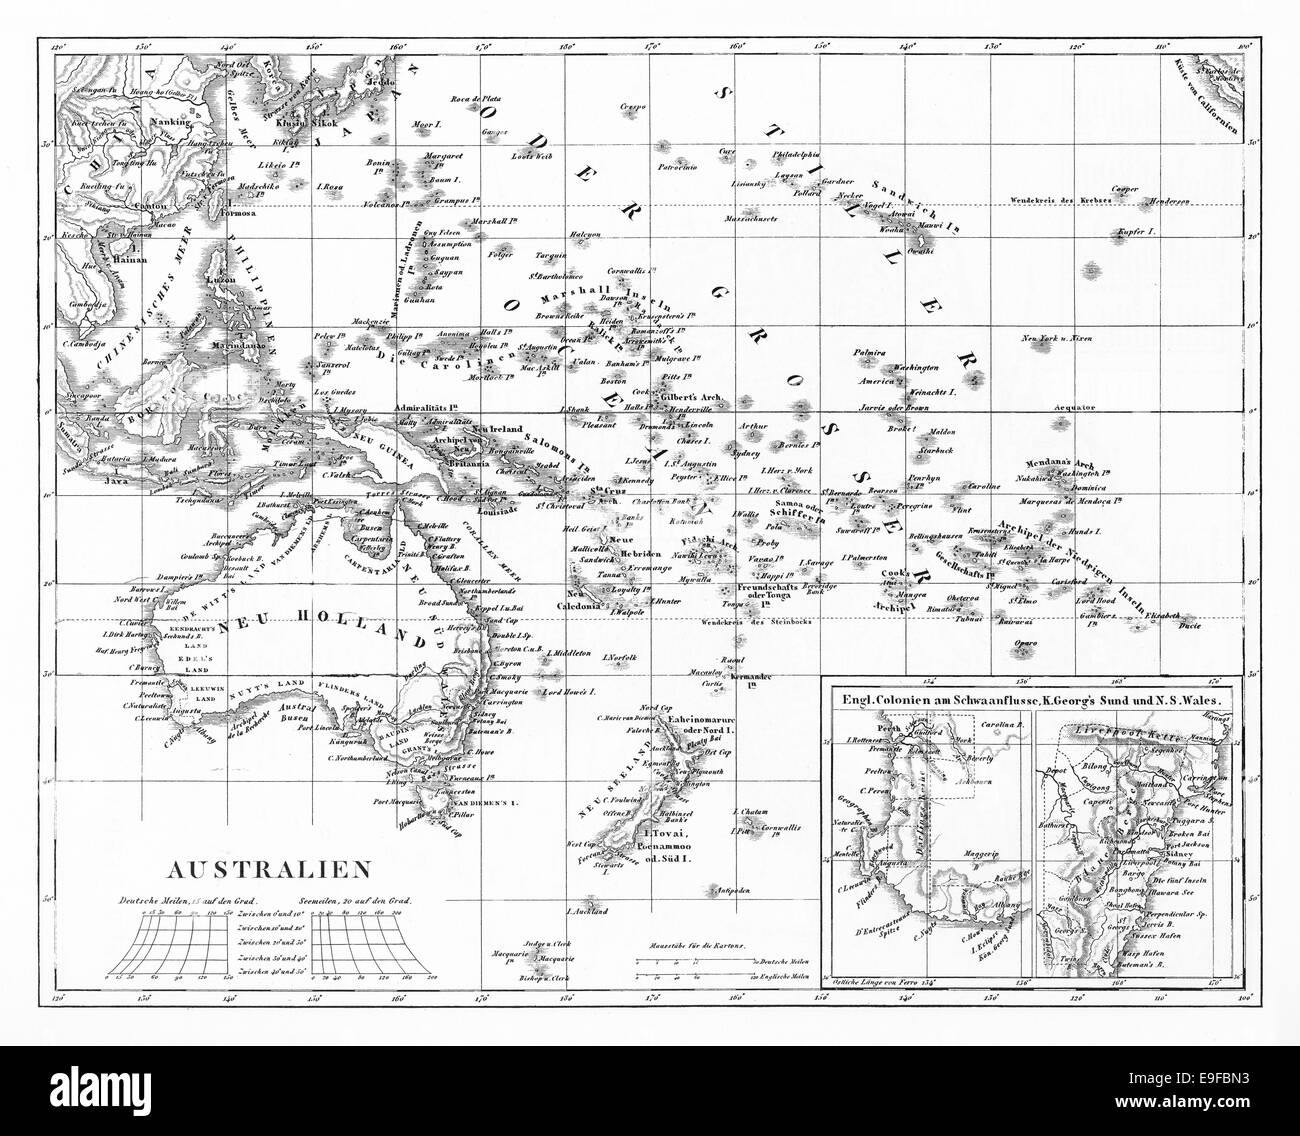 Le illustrazioni incise di una mappa di Australia da enciclopedia iconografico della scienza, letteratura e arte, pubblicato nel 1851 Foto Stock